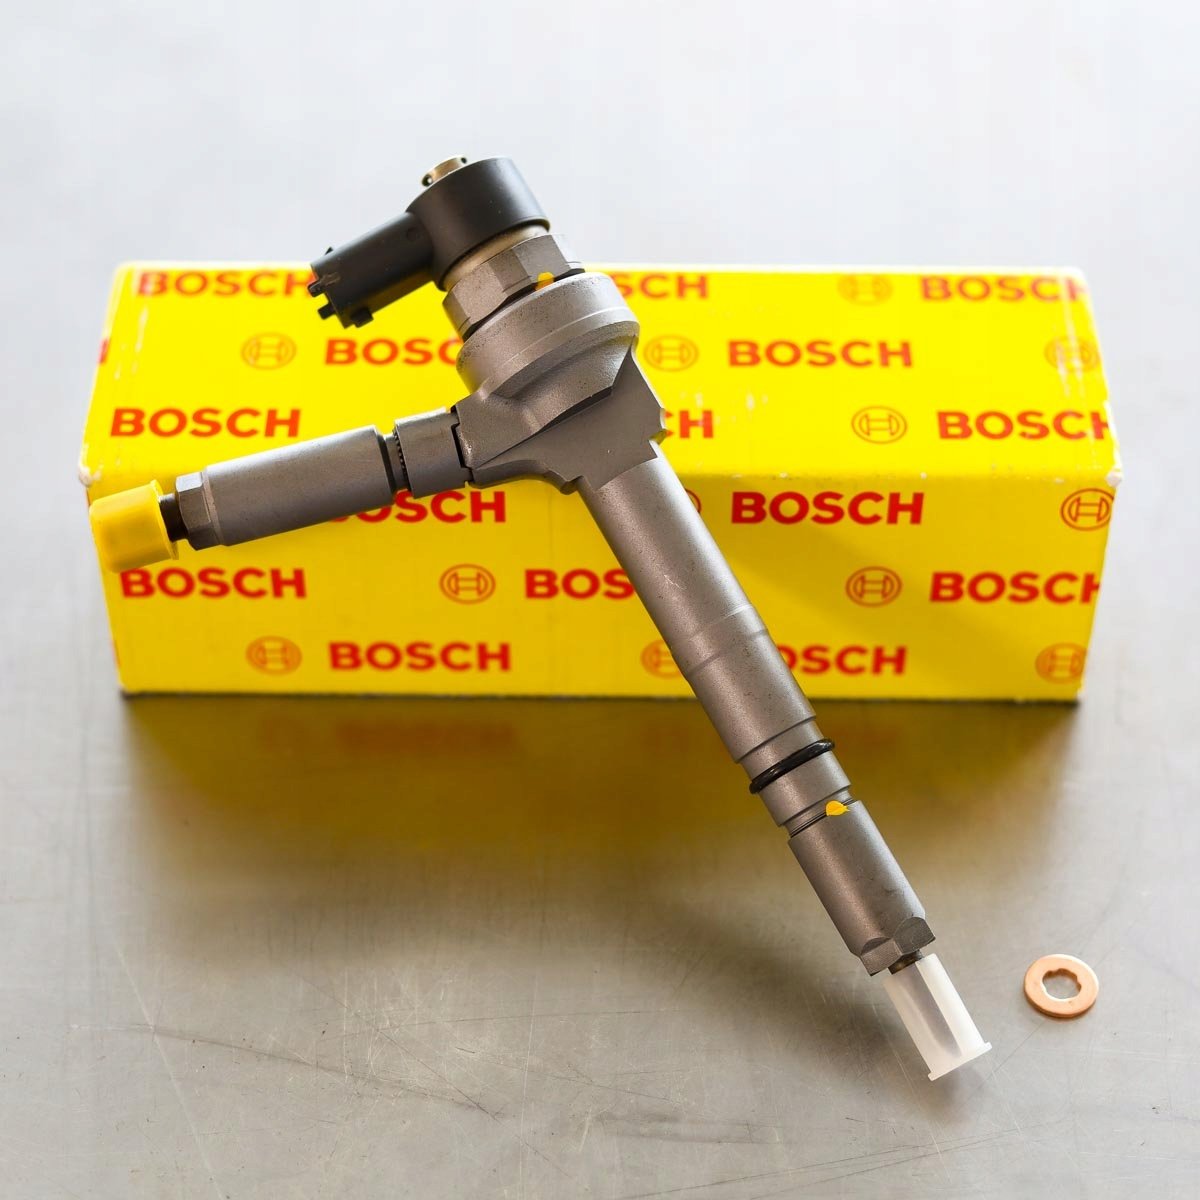 Wtryskiwacz Bosch naprawiony gotowy do wysłania do Klienta na gwarancji - niska cena